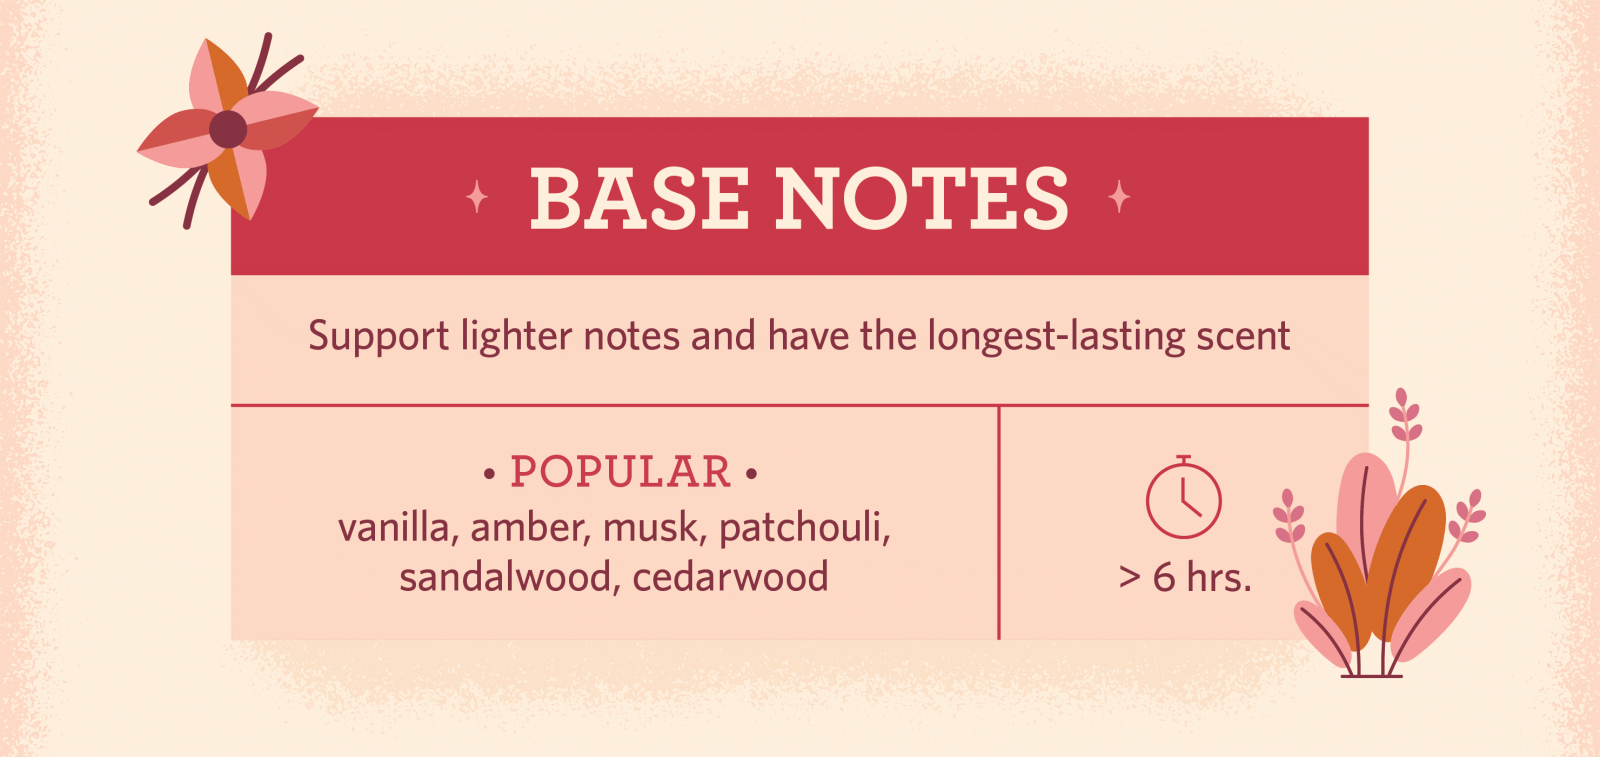 نت های پایانی در هرم بویایی عطر - بیس نت Base Notes